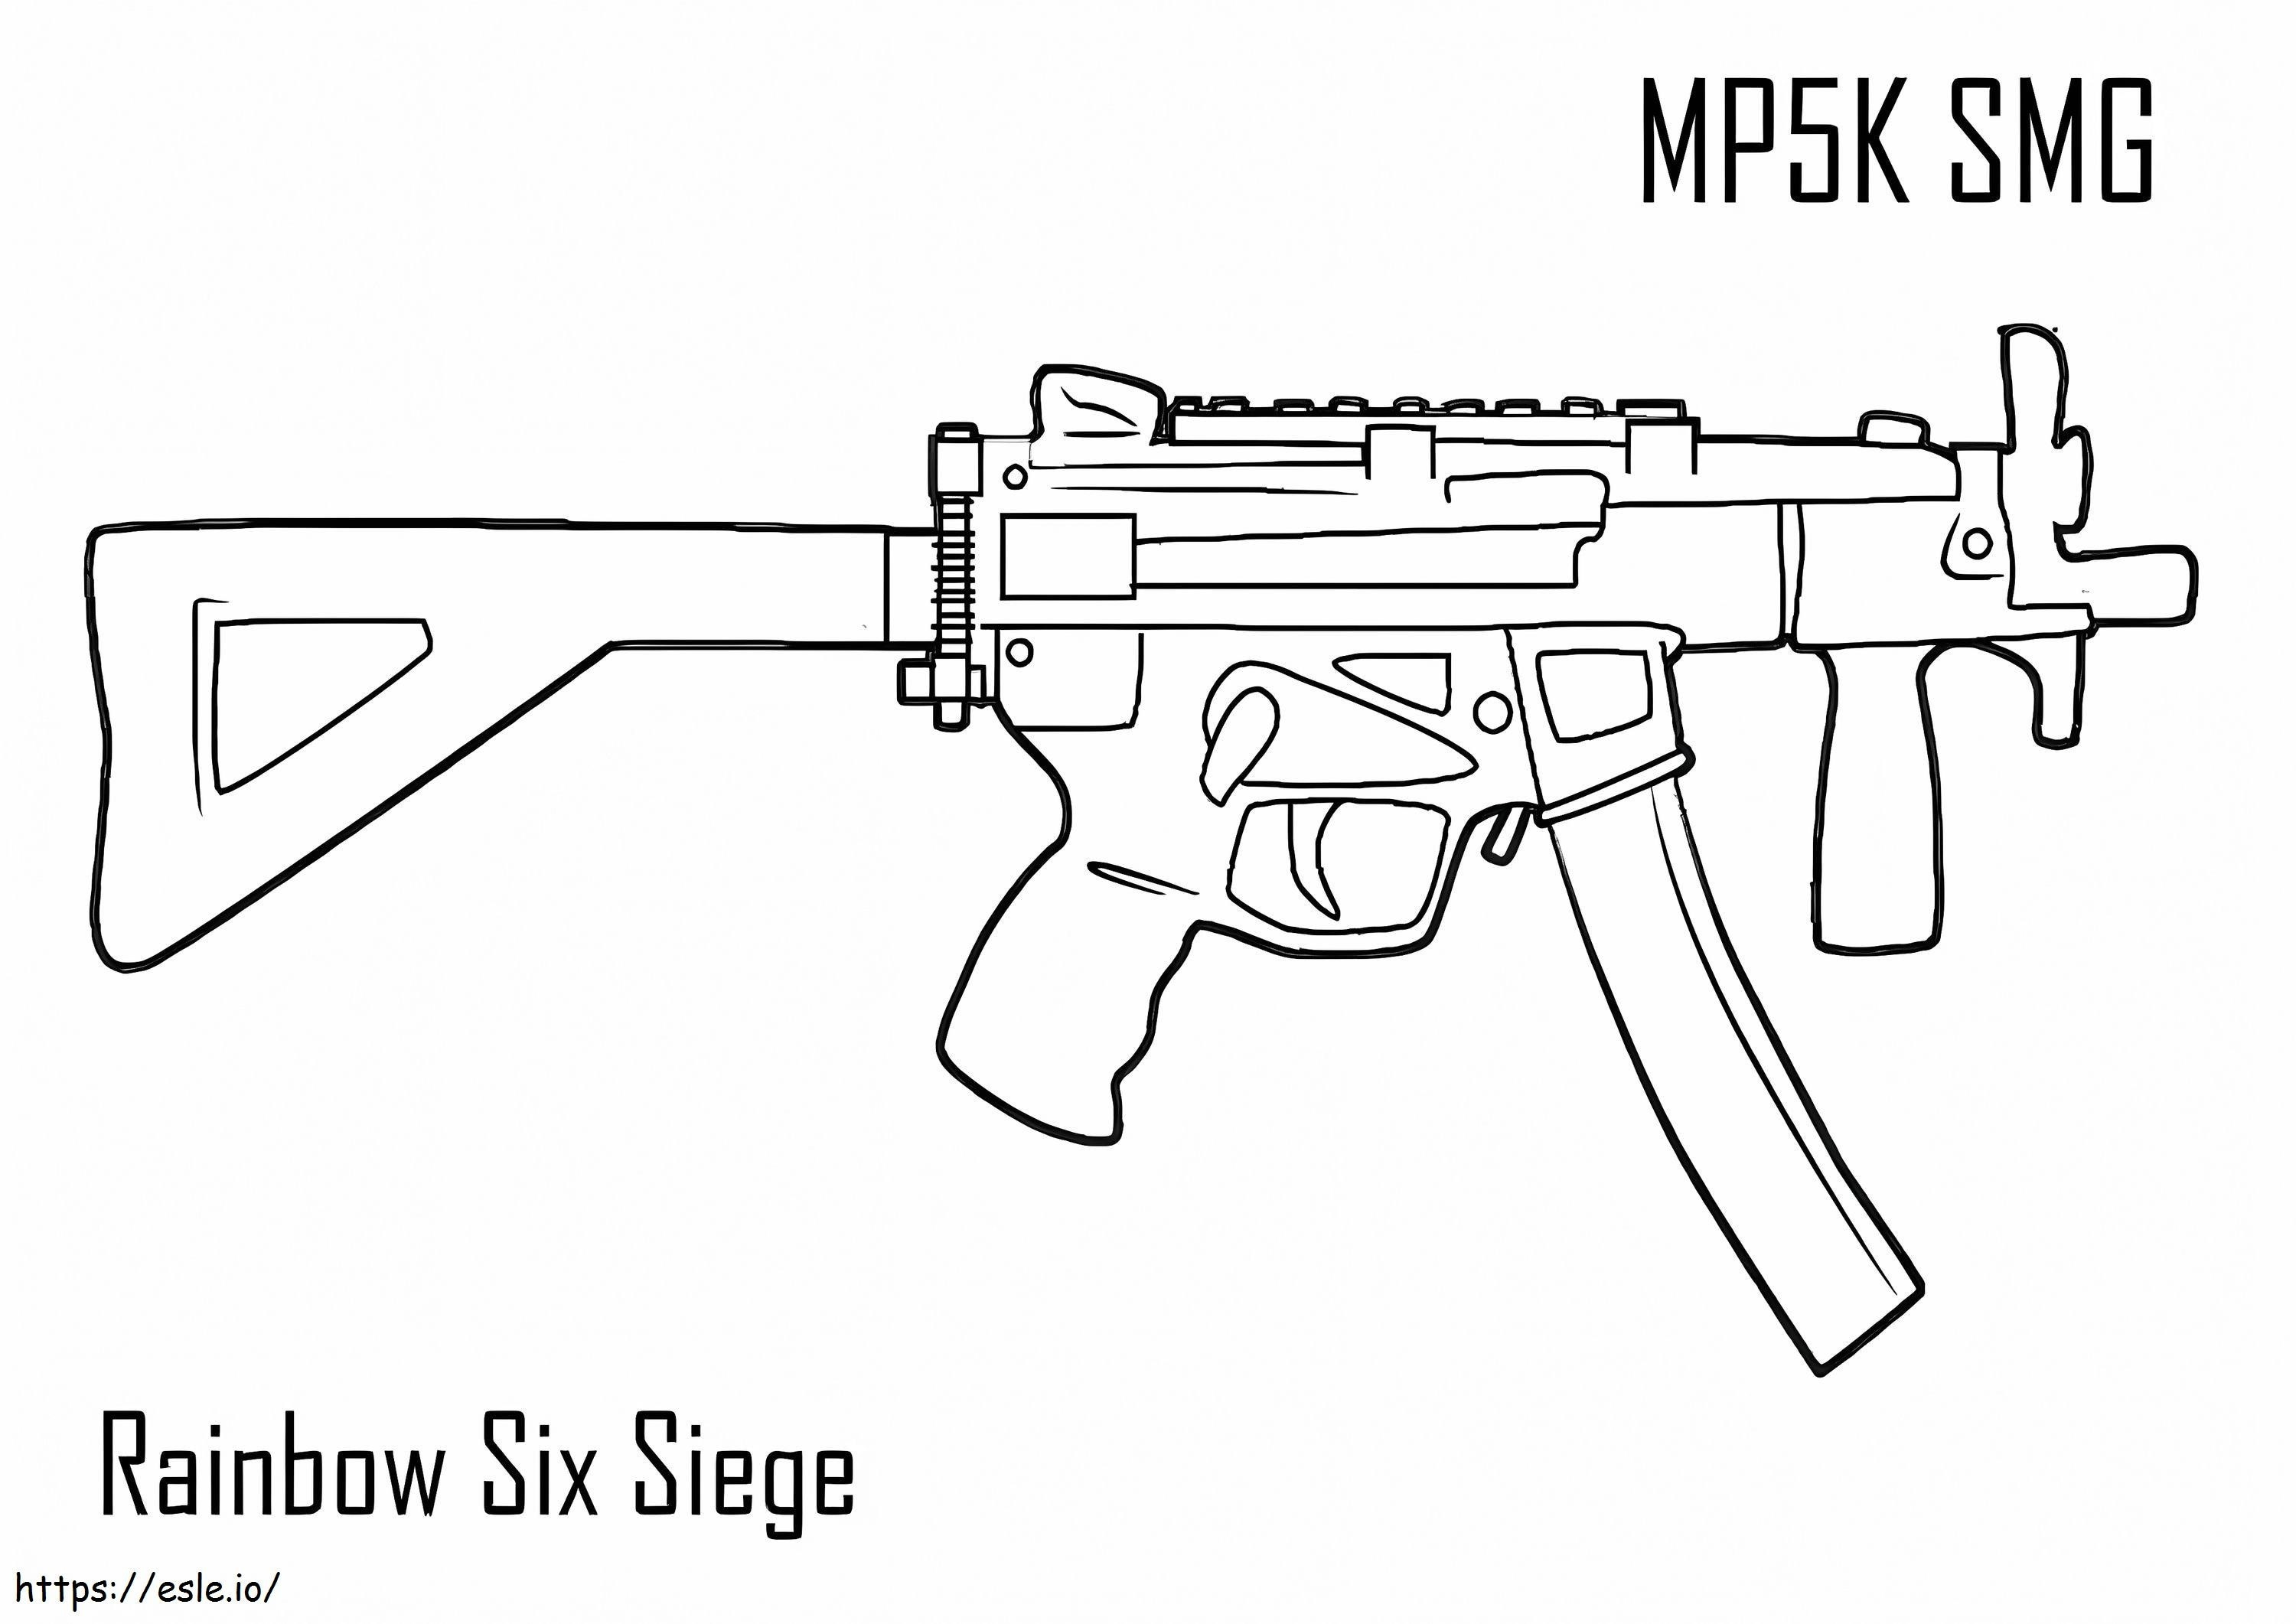 Coloriage MP5K SMG Rainbow Six Siège à imprimer dessin